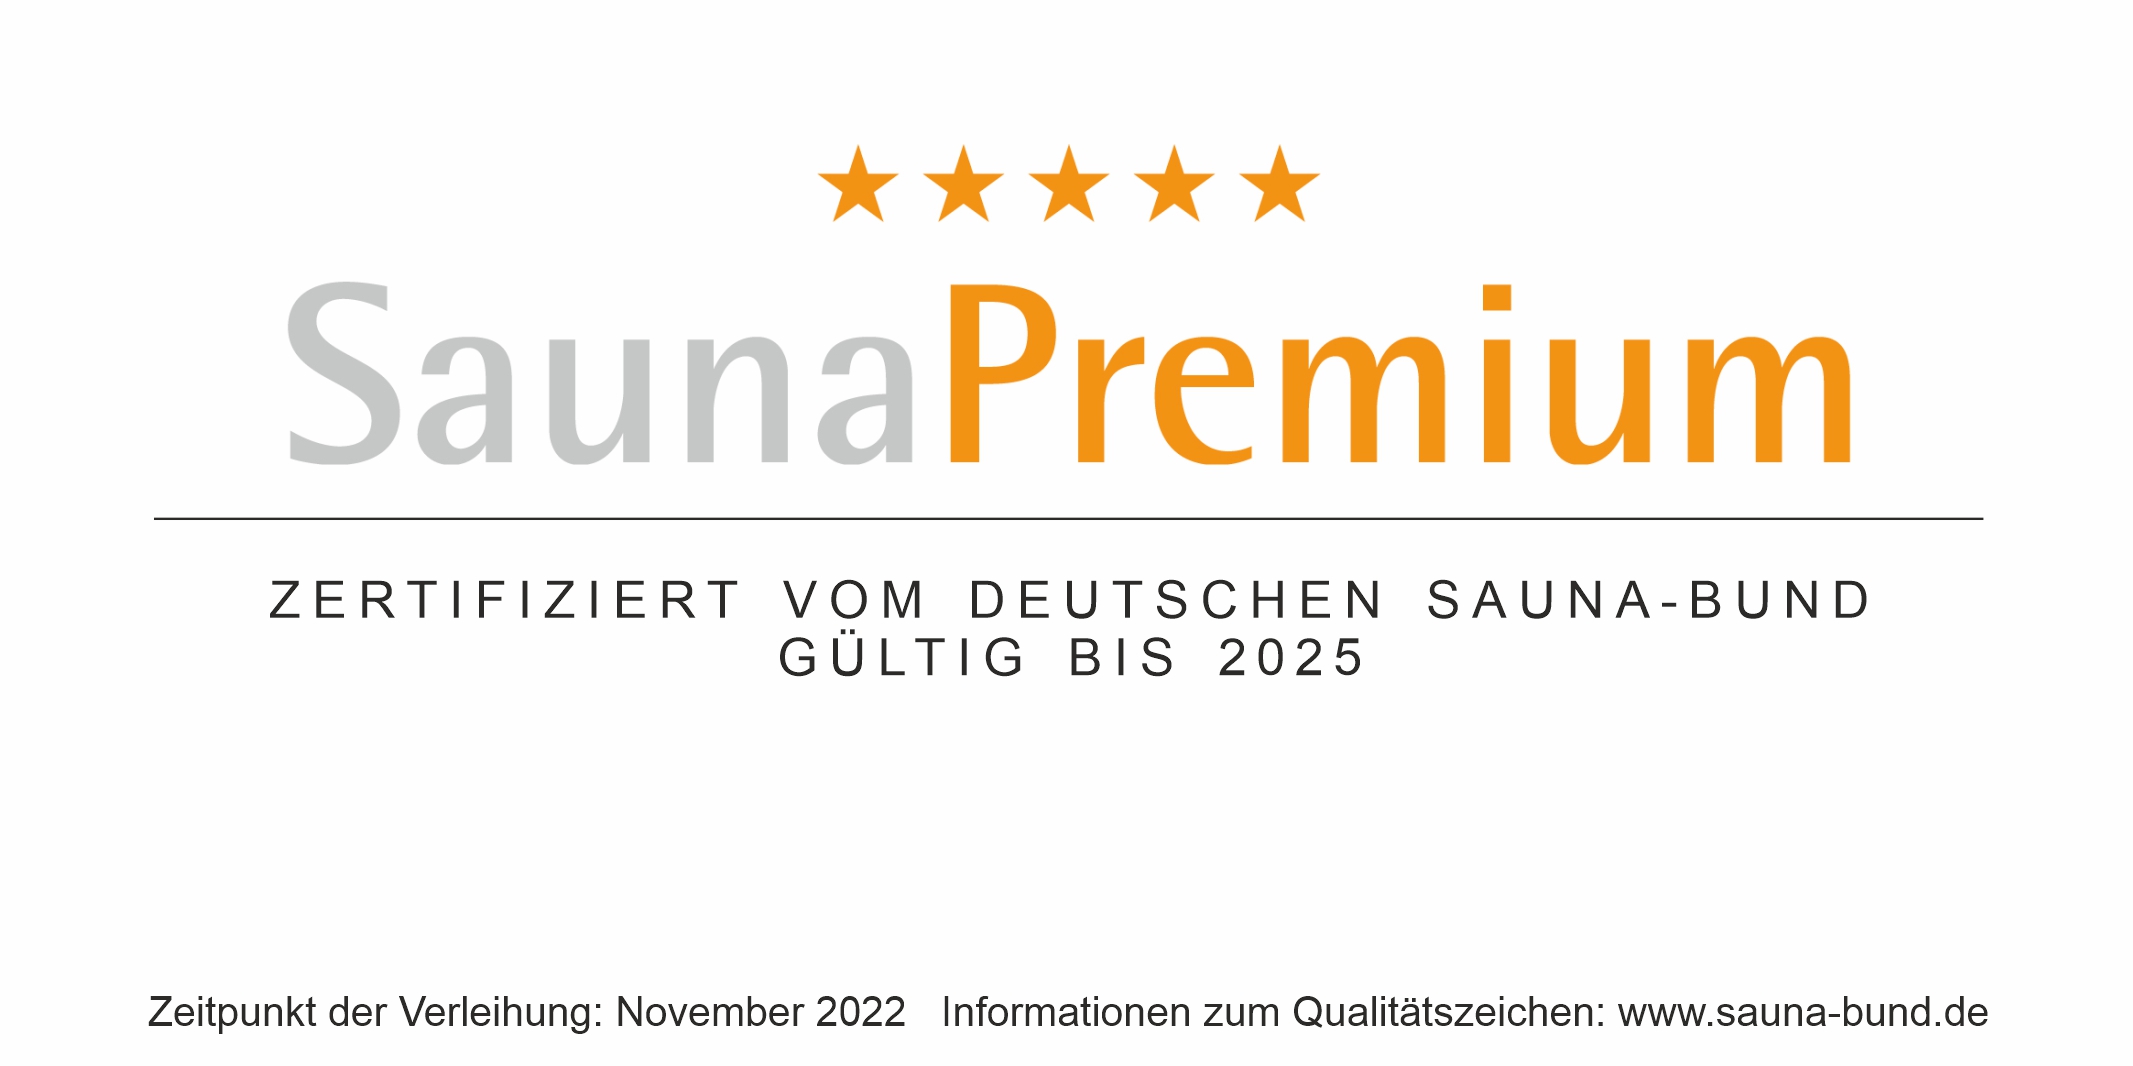 You are currently viewing Zum 4. Mal als PremiumSauna ausgezeichnet